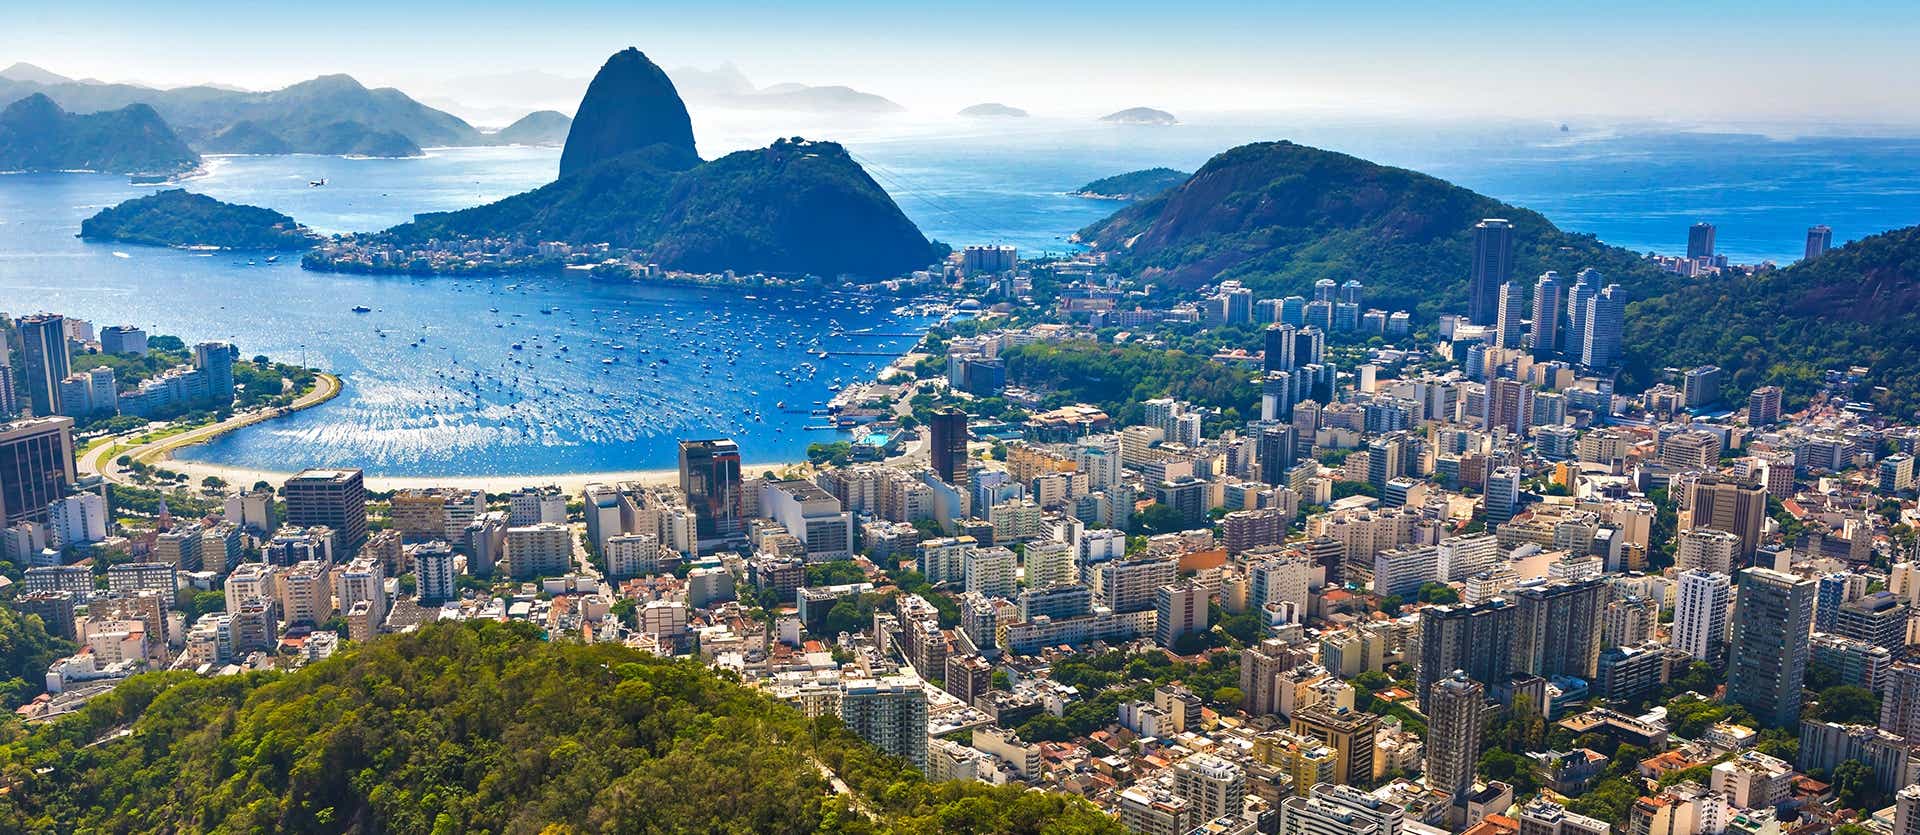 Panoramic View <span class="iconos separador"></span> Rio de Janeiro <span class="iconos separador"></span> Brazil